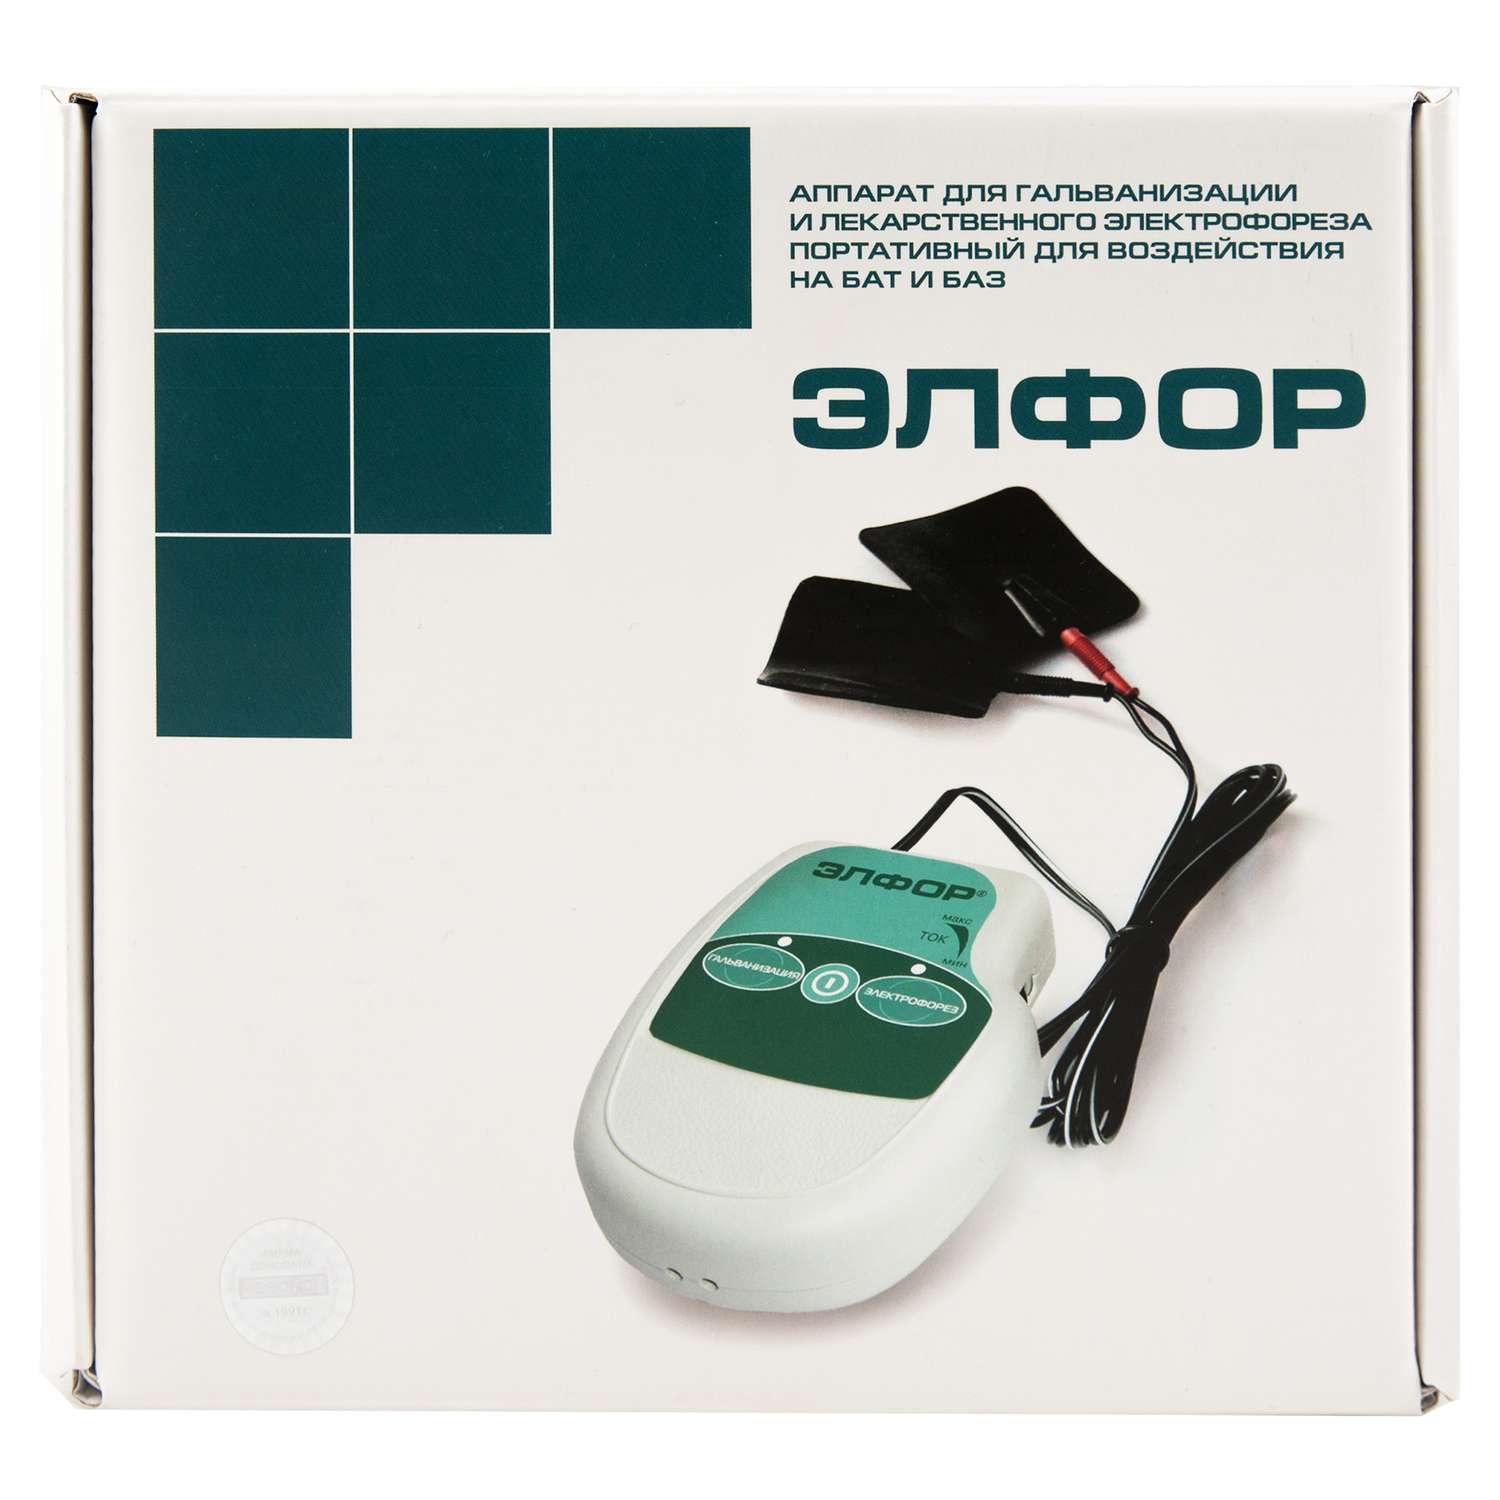 Физиотерапевтический аппарат Невотон ЭЛФОР для гальванизации и электрофореза в домашних условиях - фото 8